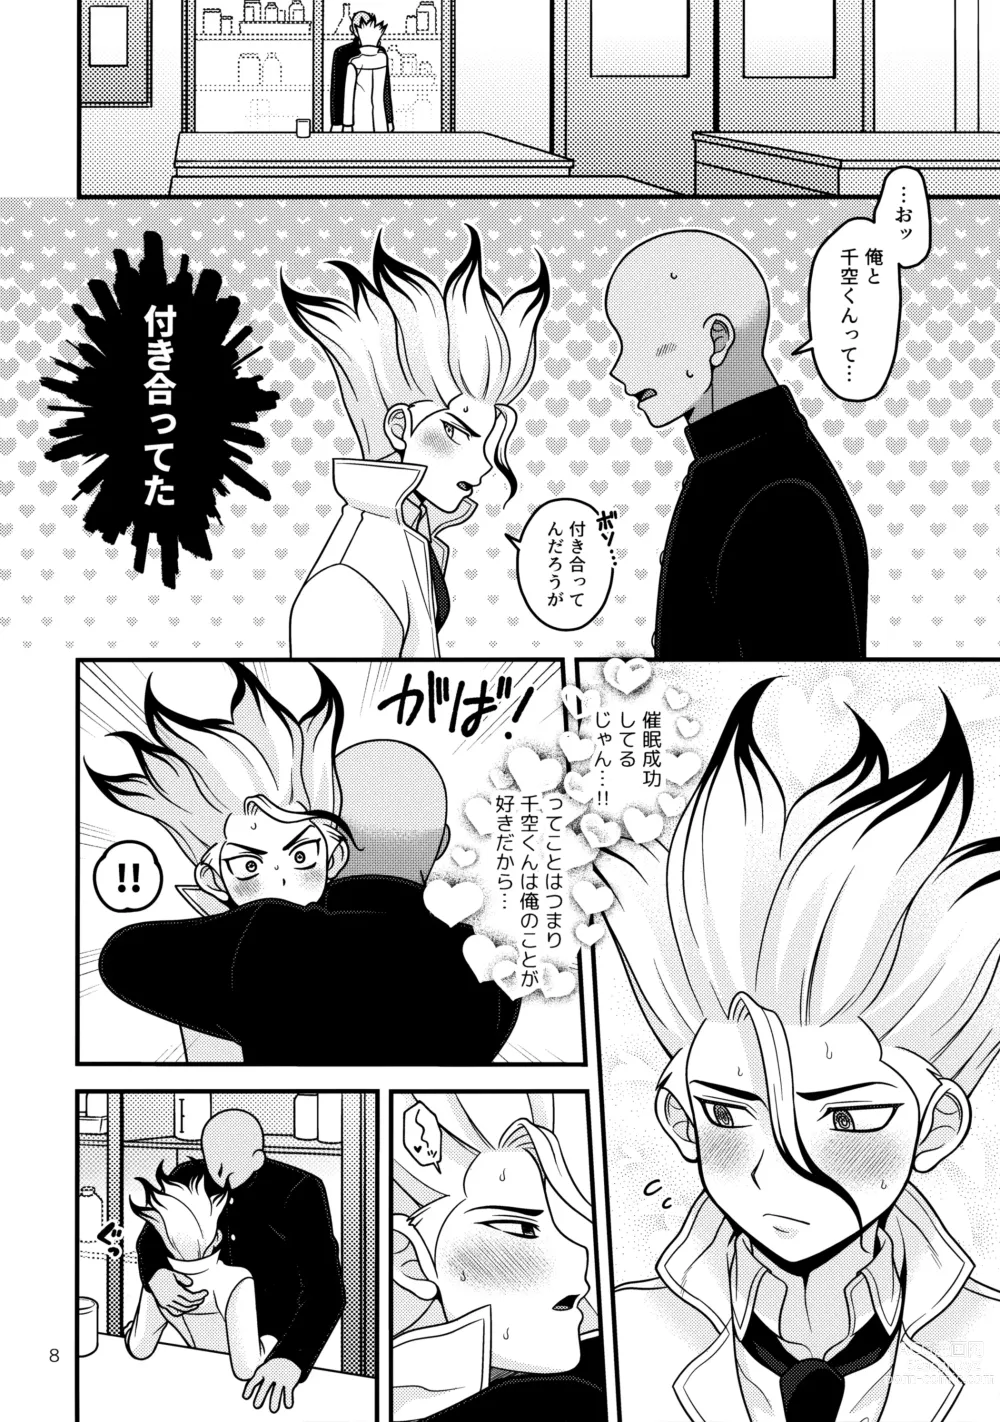 Page 7 of doujinshi Houkago no Daini Jikkenshitsu 2